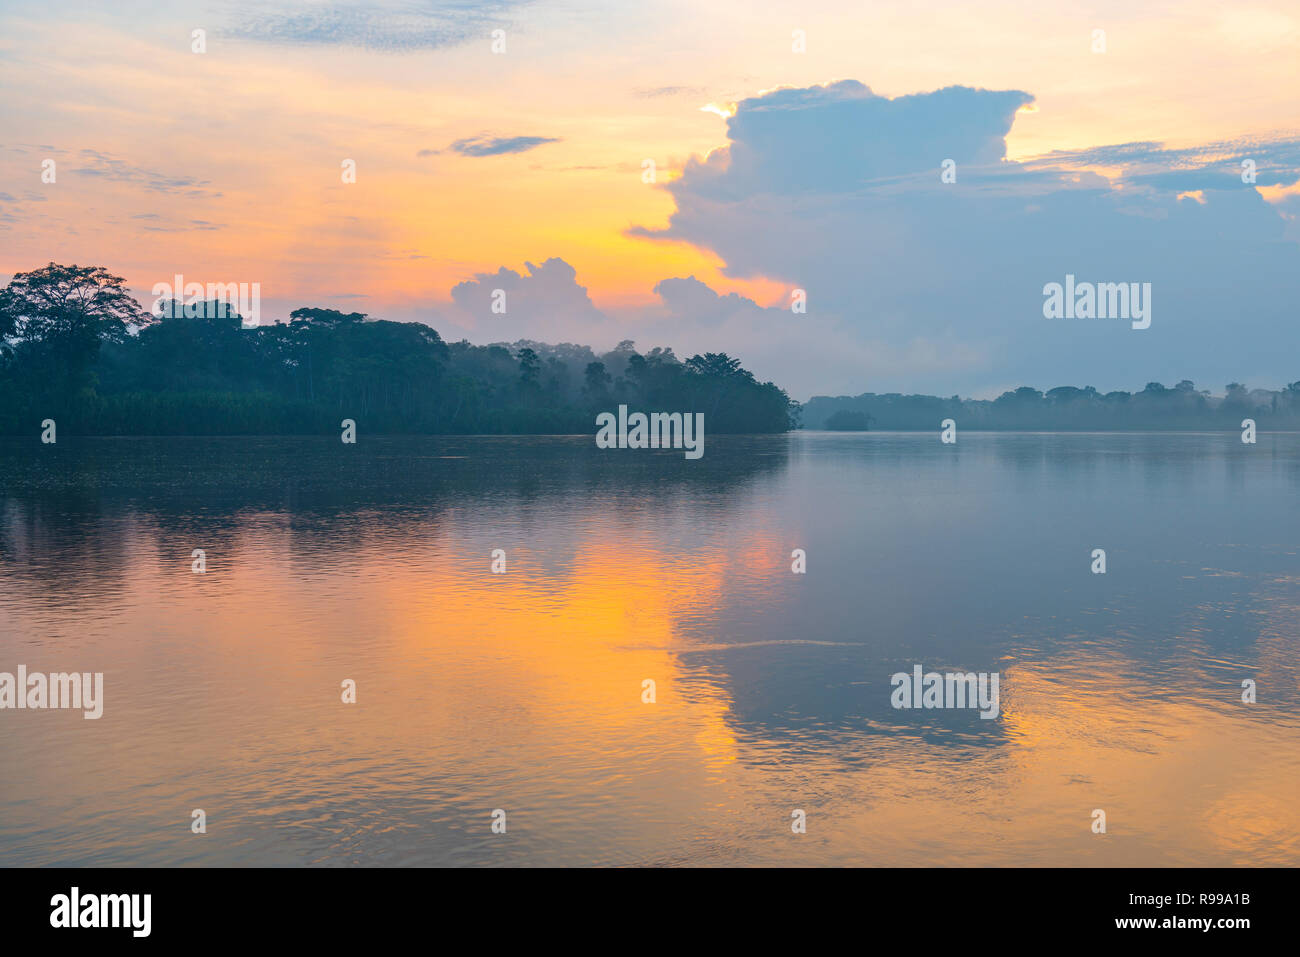 Landschaft Foto eines Sonnenuntergangs im Amazonas Becken in den Grafschaften von Bolivien, Ecuador, Kolumbien, Peru, Brasilien, Venezuela und Guyana. Stockfoto